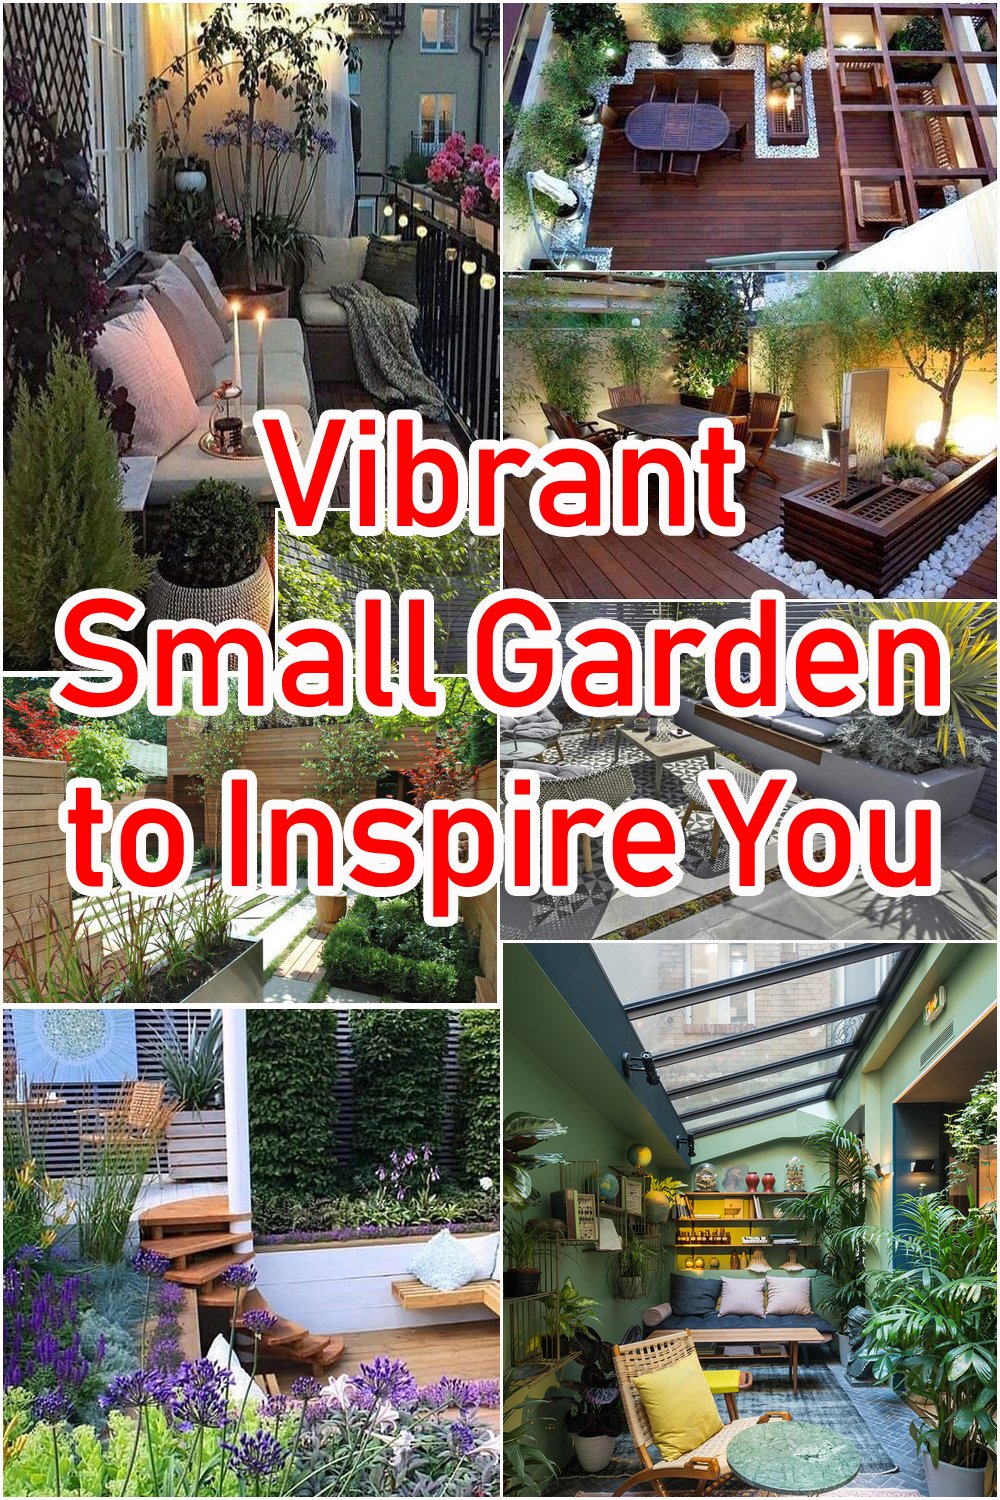 Vibrant Small Garden to Inspire You